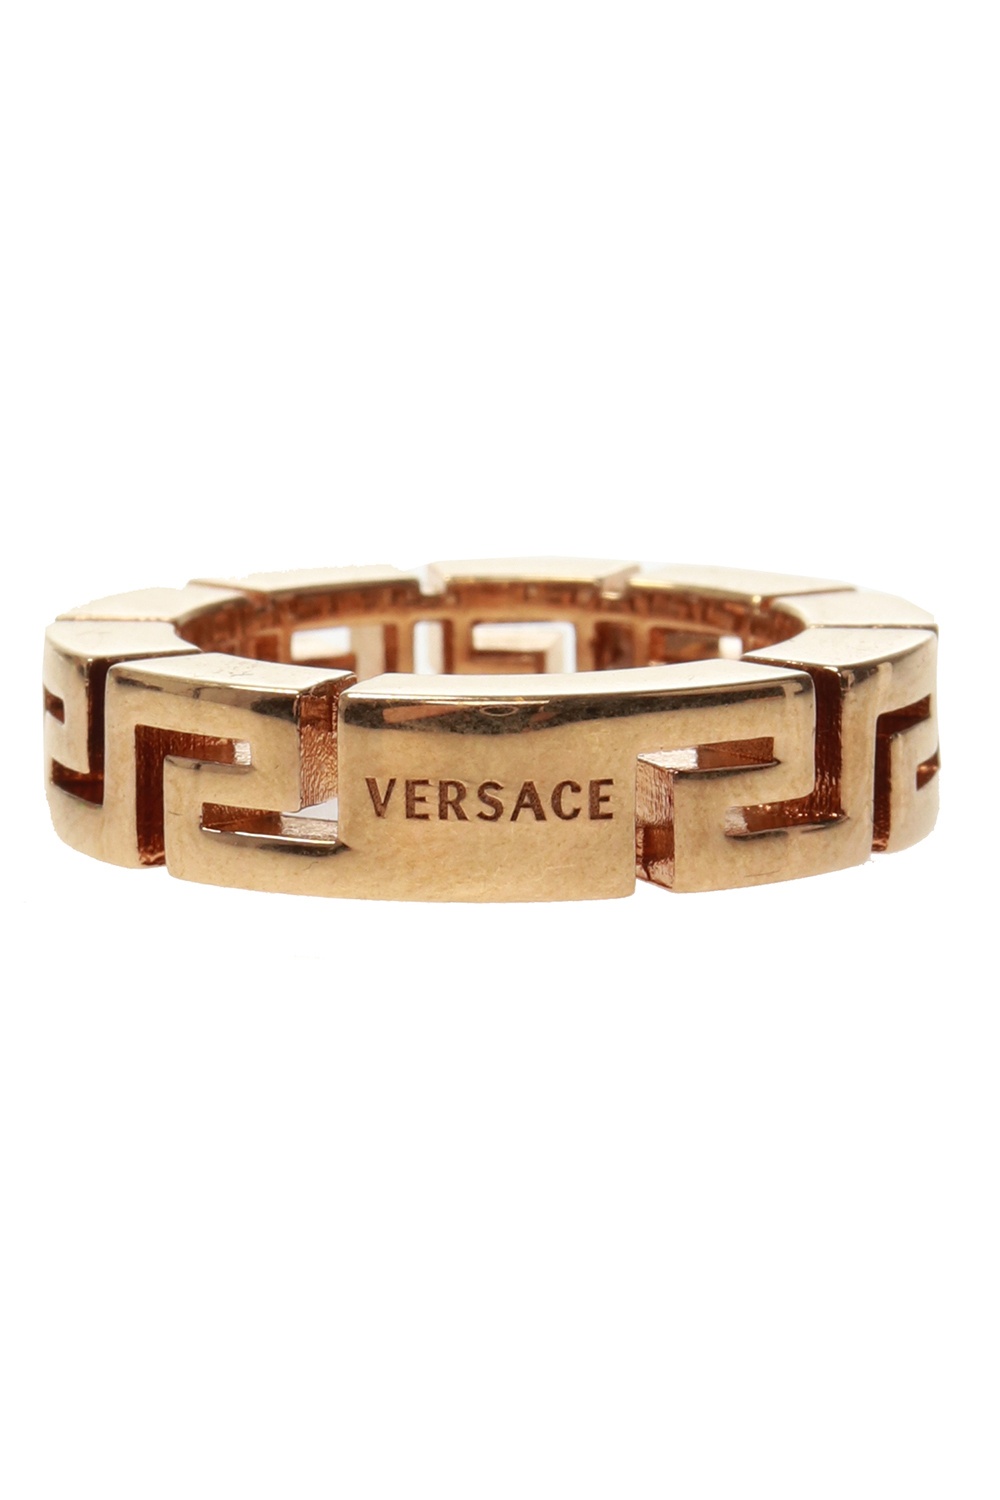 versace ring greek